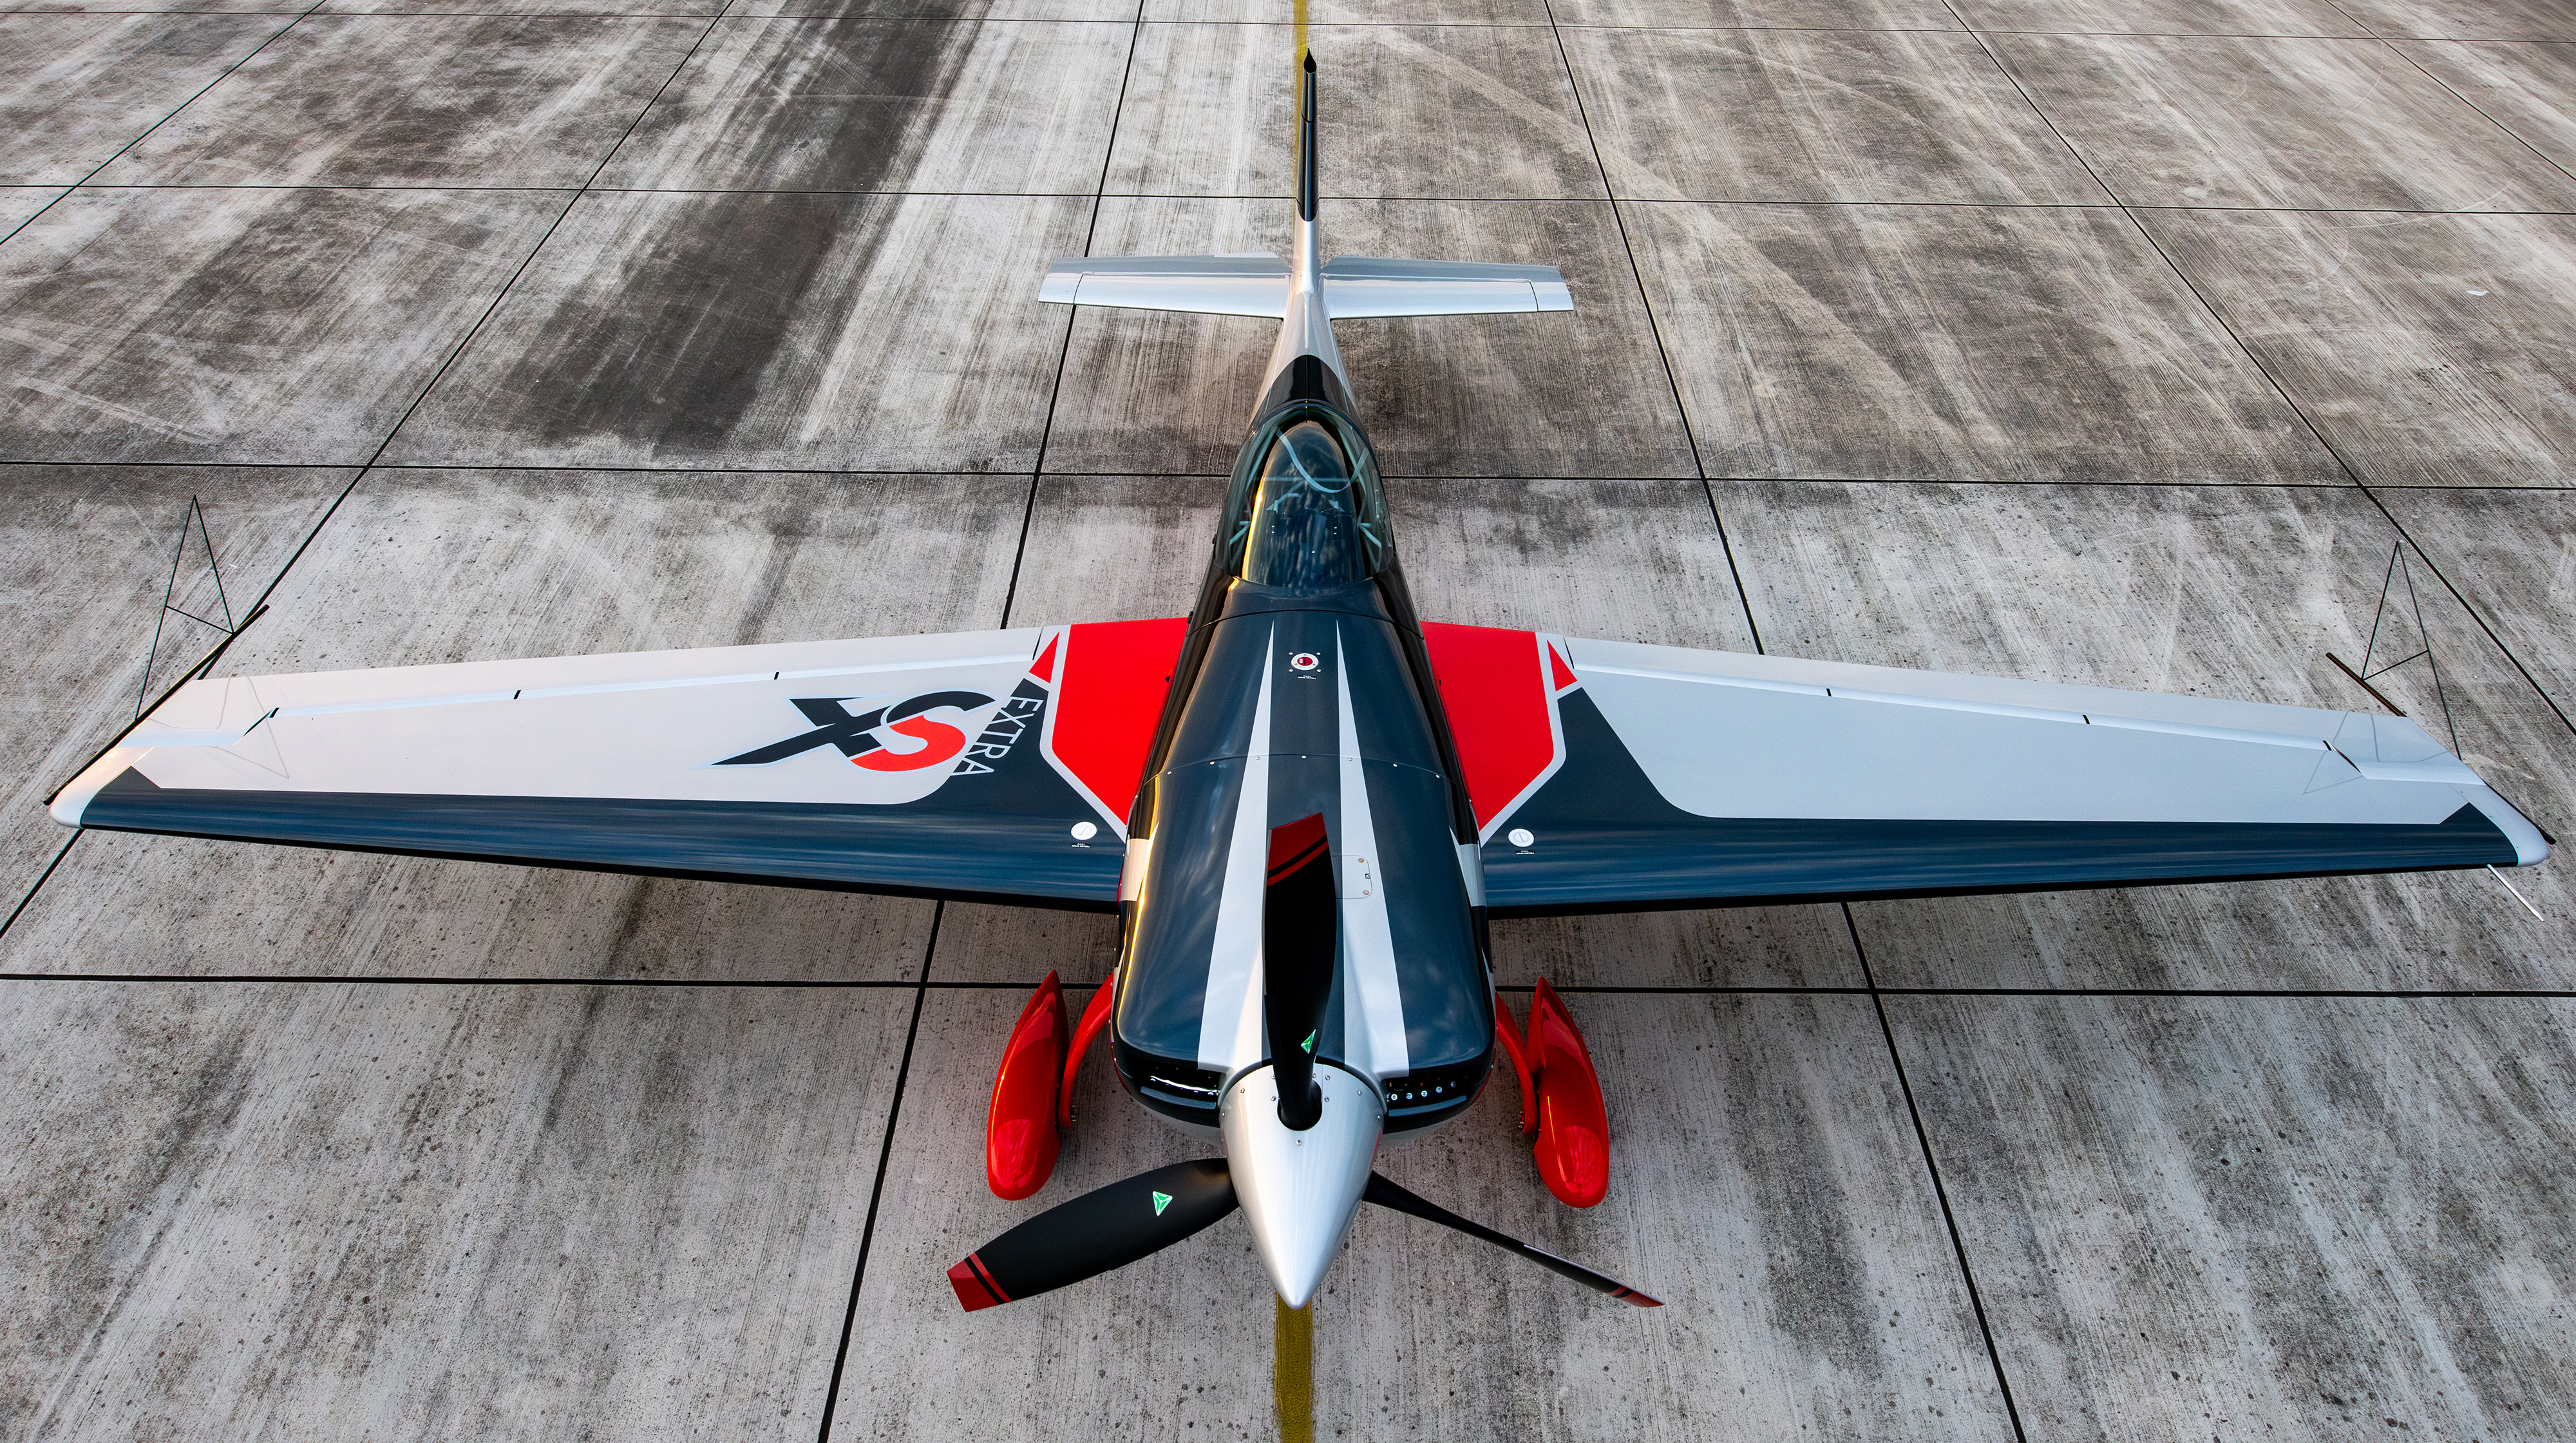 Extra Aircraft představila nový akrobatický letoun 330SX